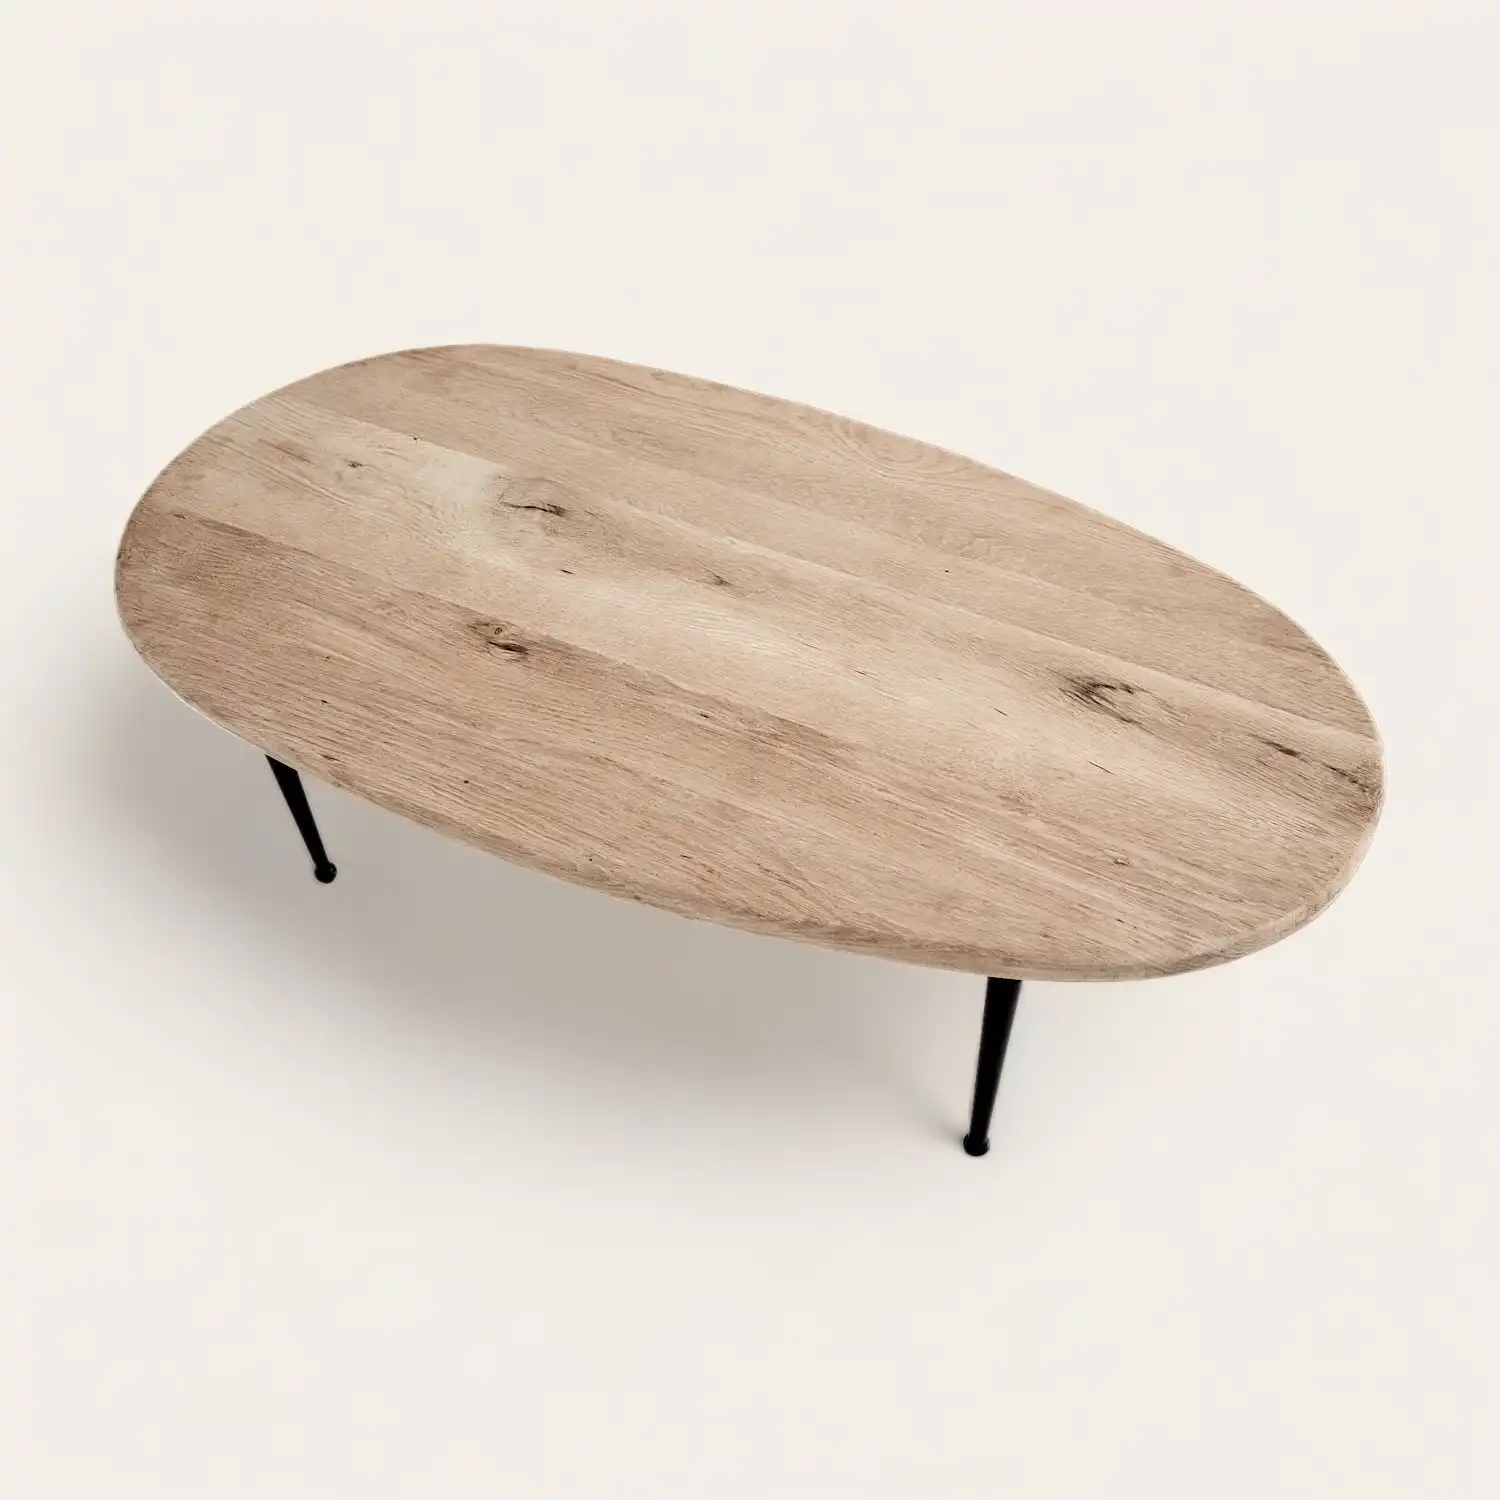  Une table basse ovale en bois rustique avec pieds noirs. 